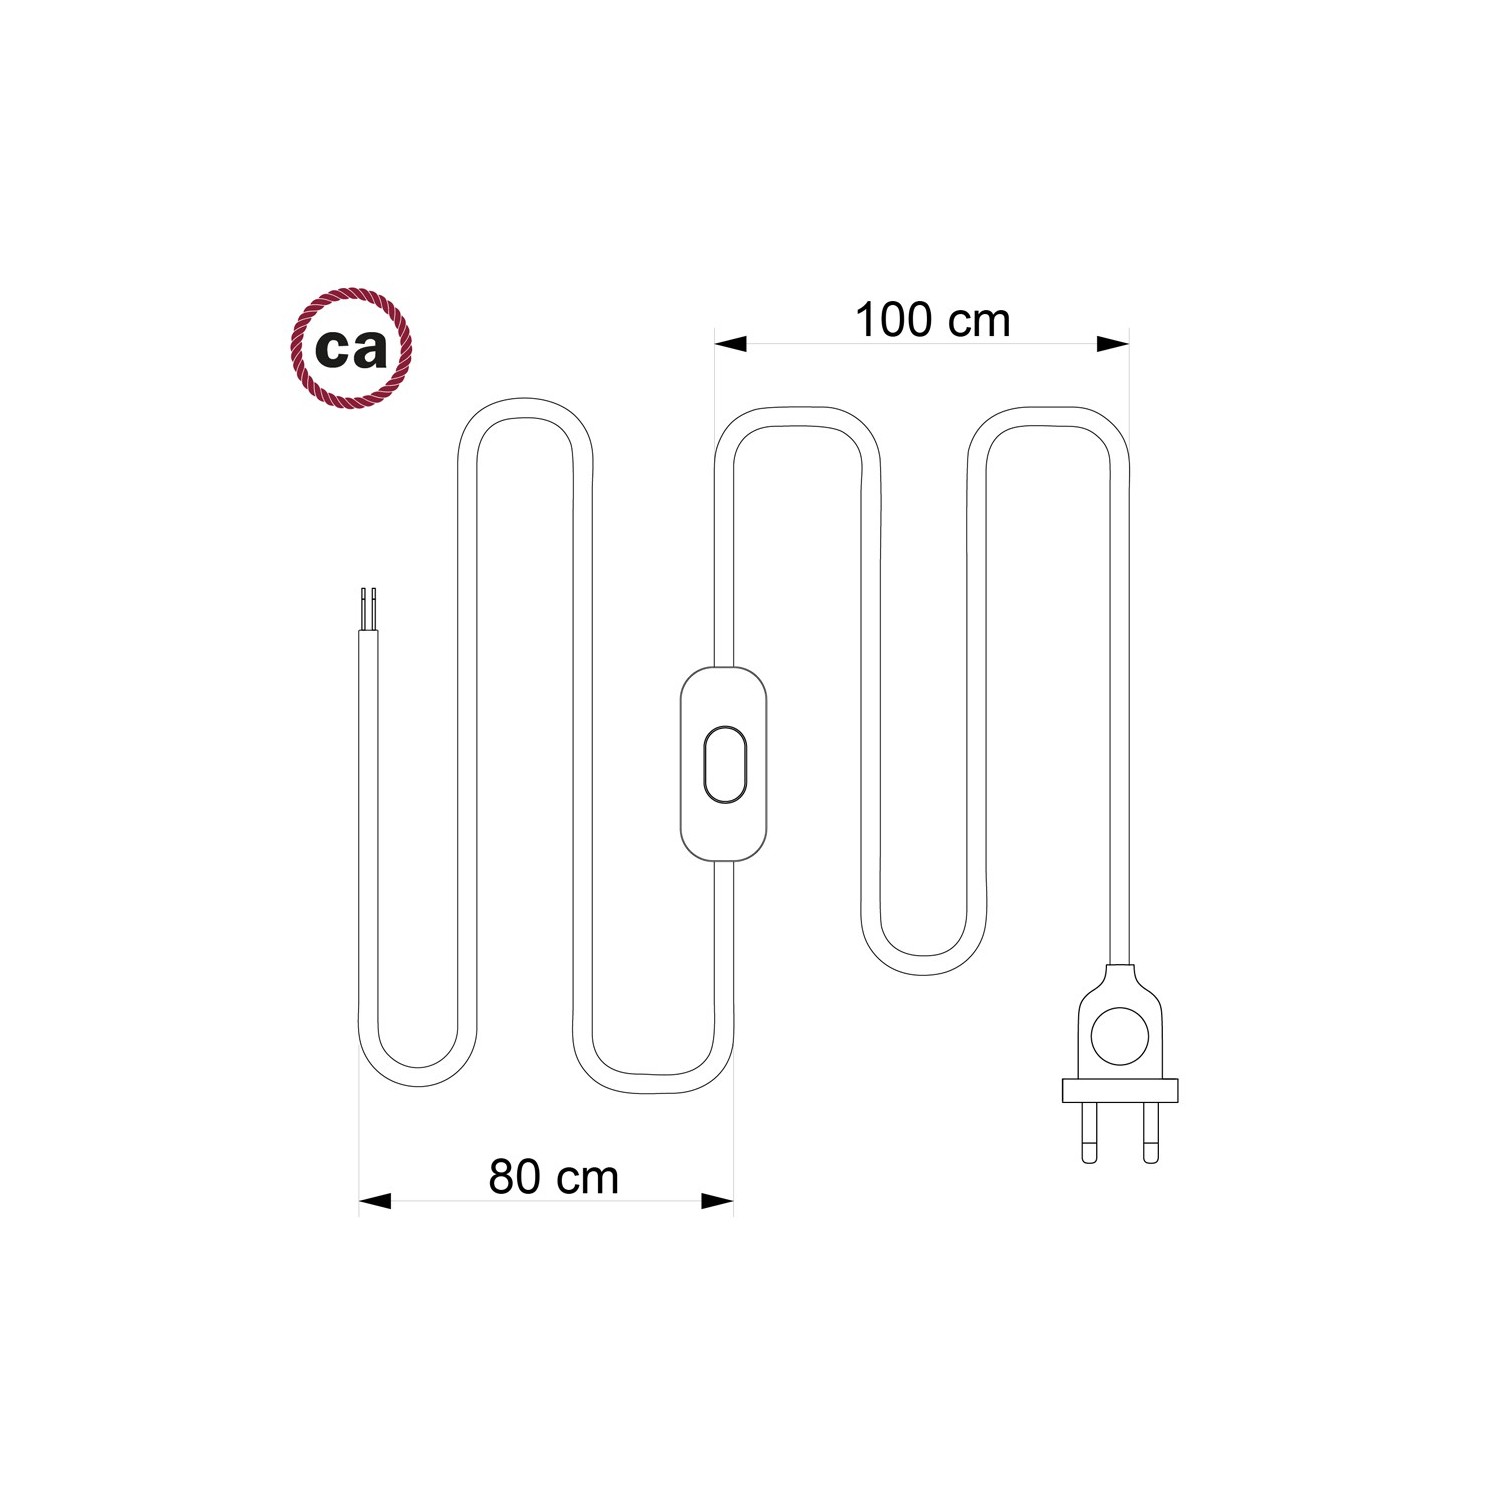 Napájecí kabel pro stolní lampu, RC01 Bílý bavlněný 1,80 m. Vyberte si barvu zástrčky a vypínače.